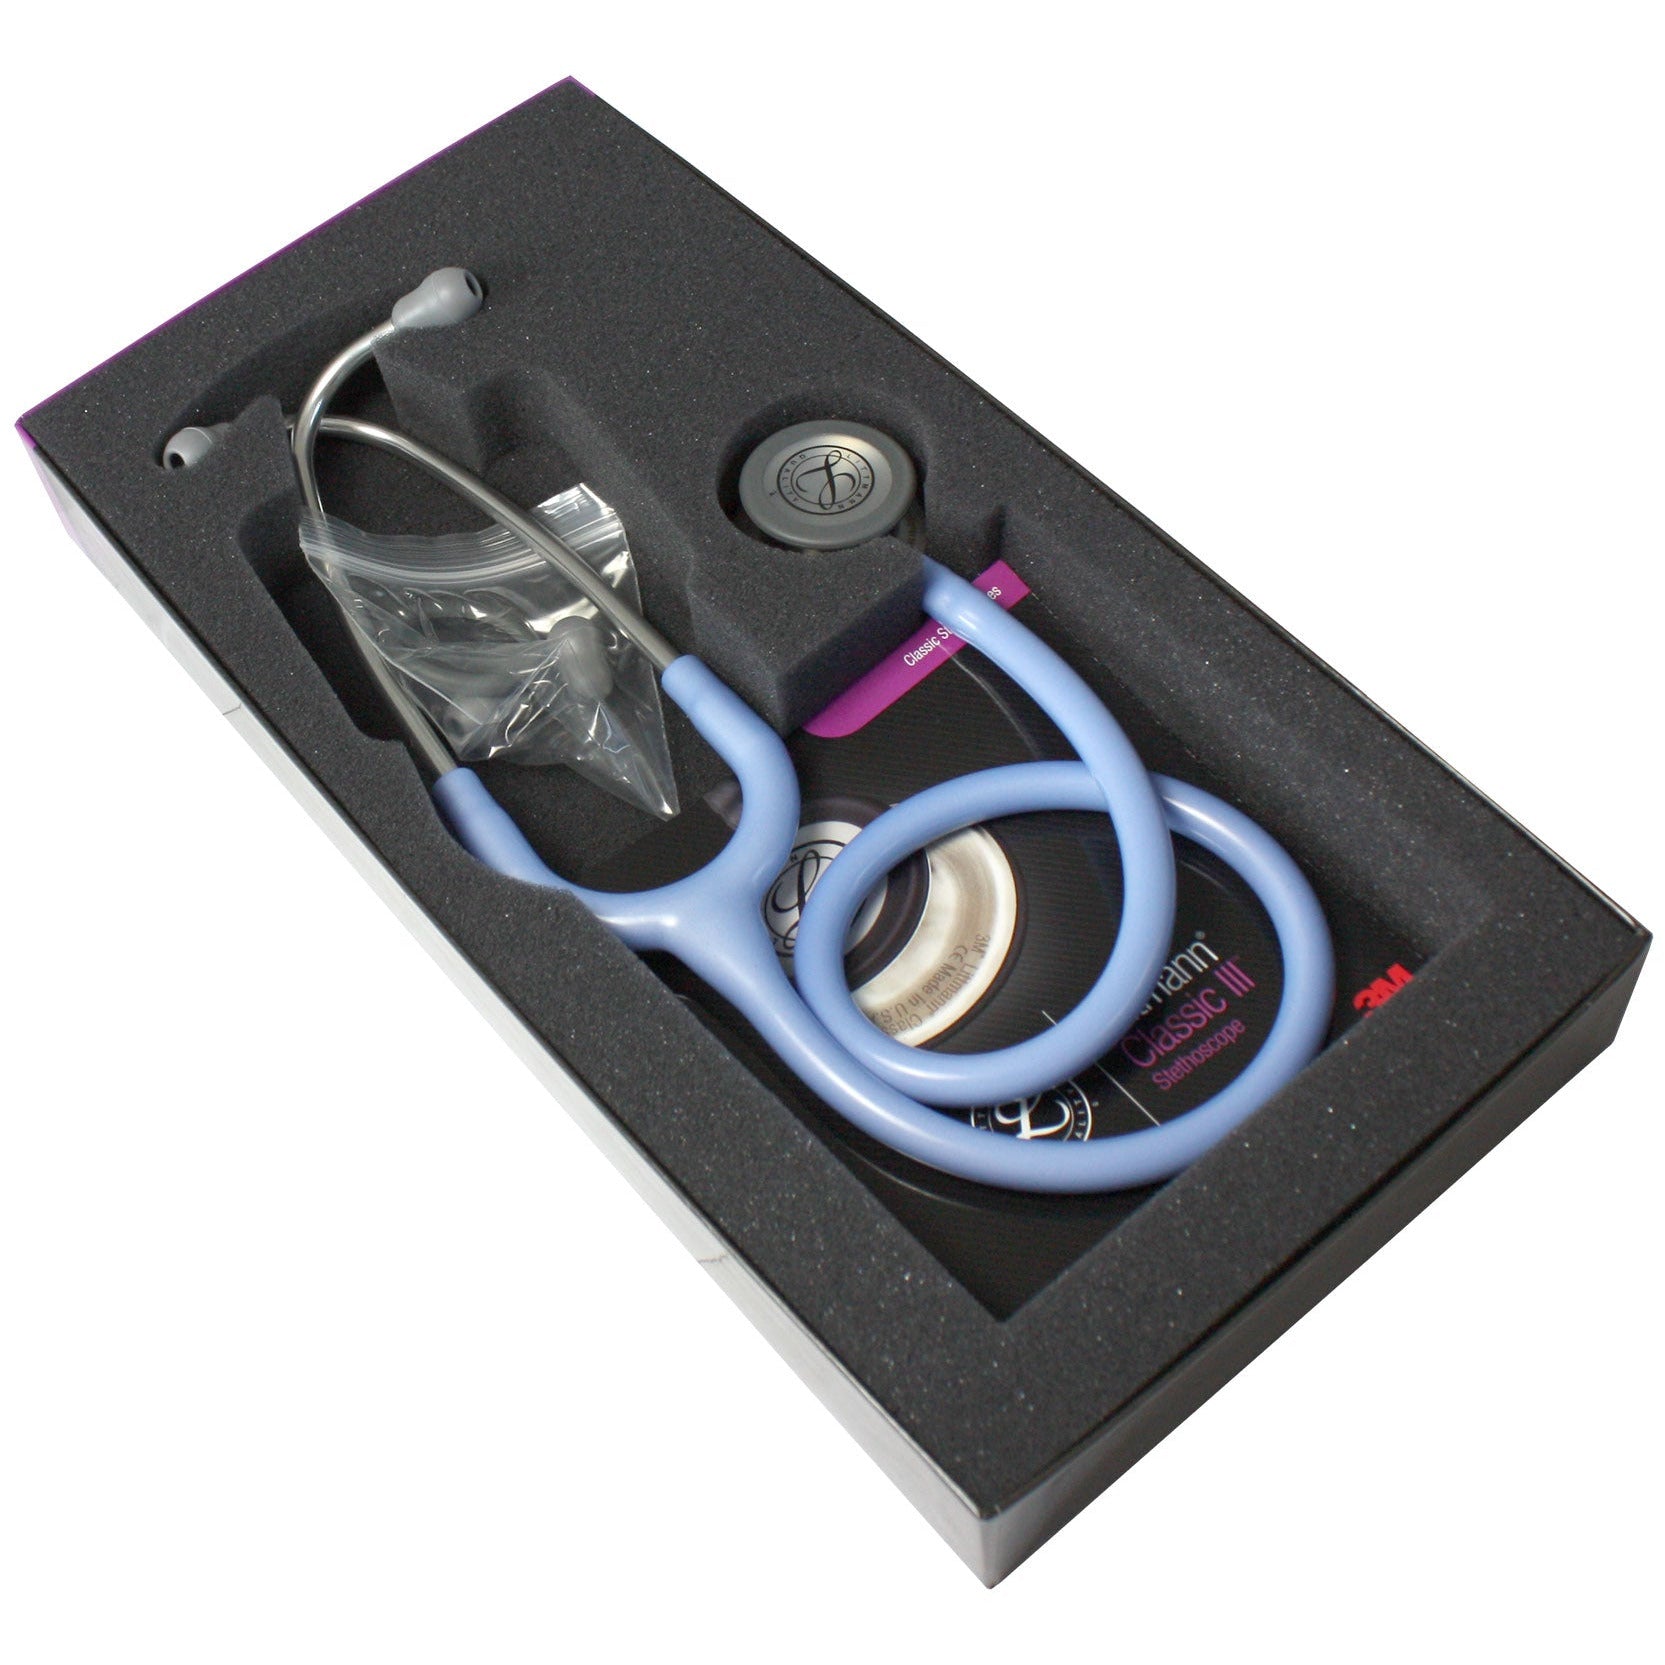 Littmann Classic III Stethoscope: Ceil Blue 5630 - Student Deal 3M Littmann